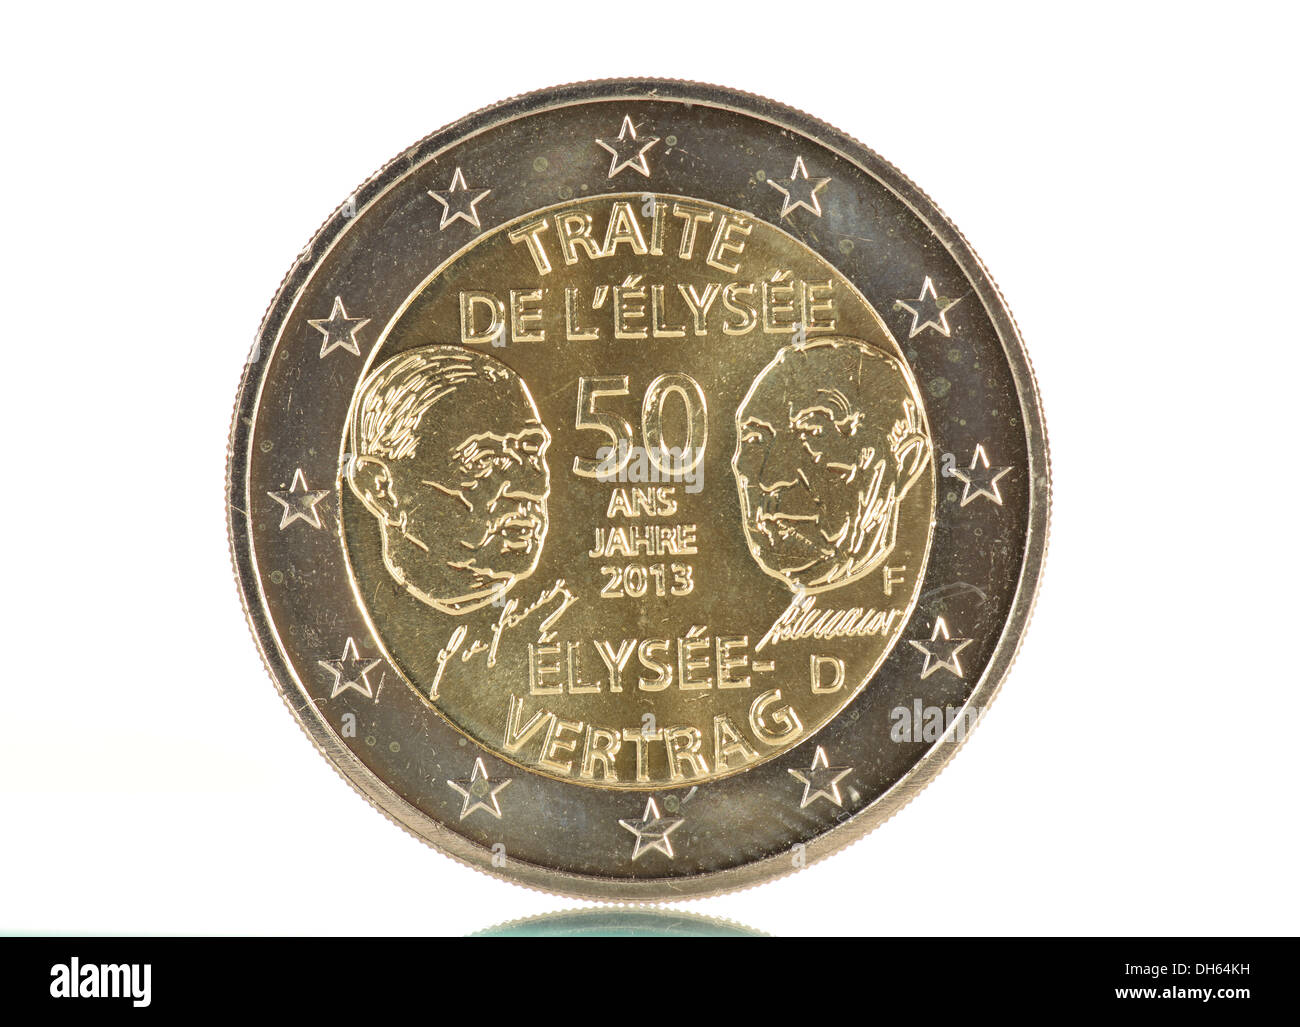 2013 moneda conmemorativa, 50 años del Tratado del Elíseo, Adenauer y De Gaulle, Stuttgart Mint F, trasero, la moneda de 2 euros Foto de stock